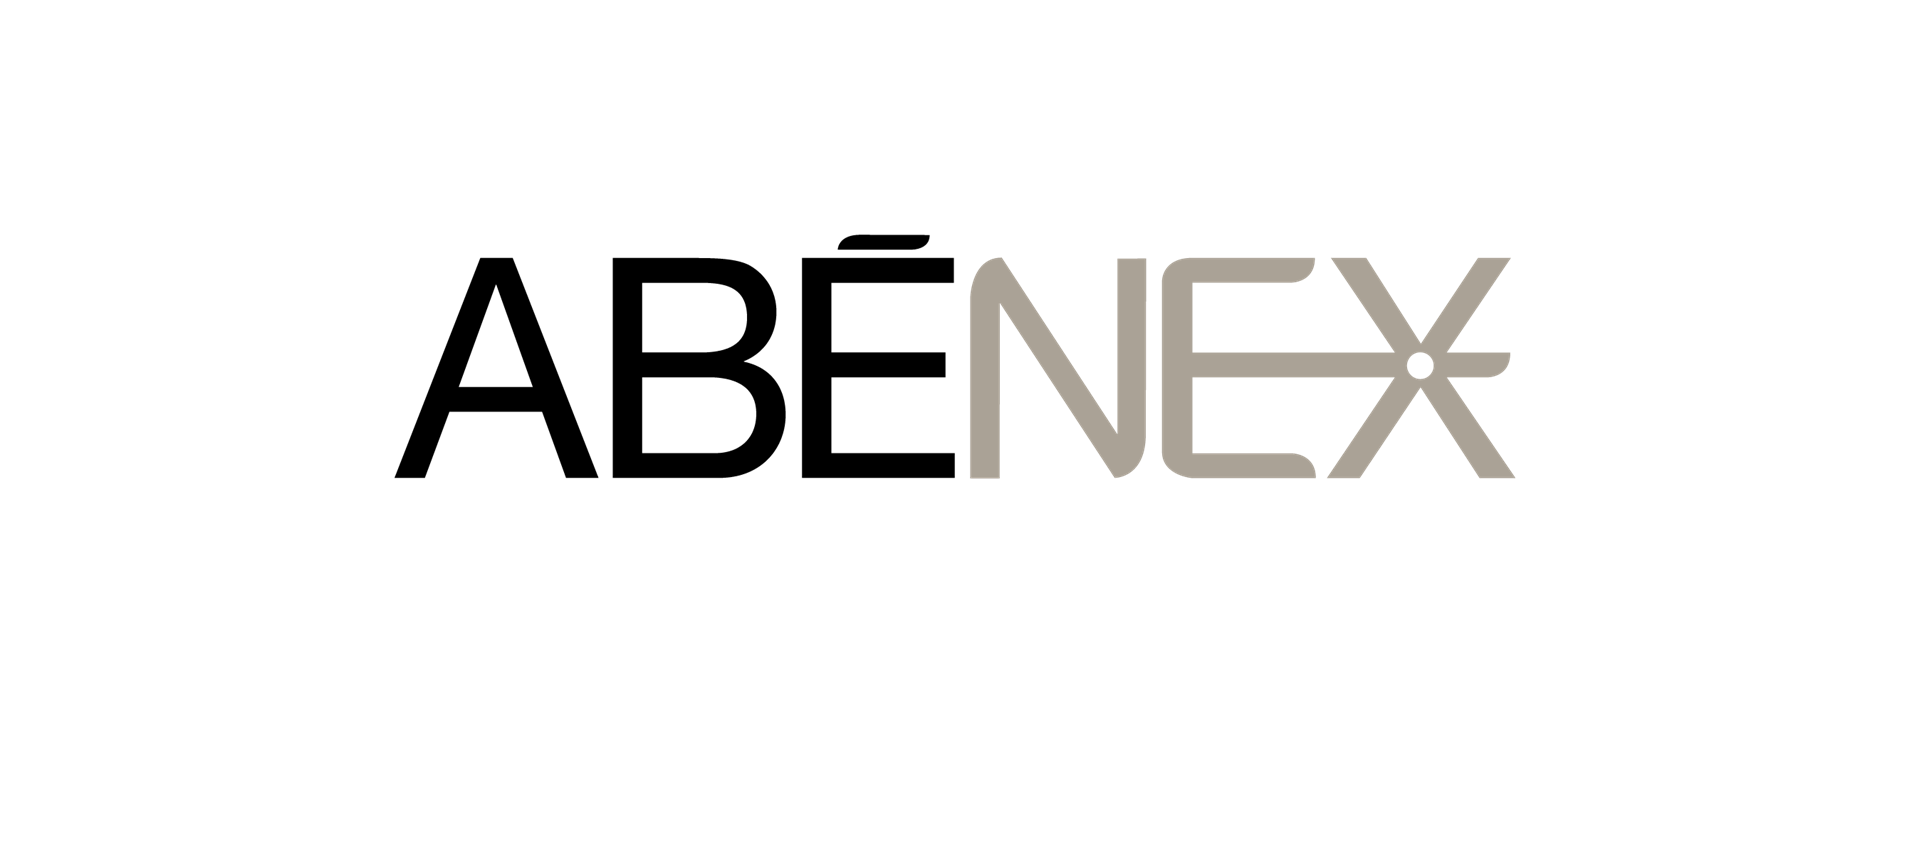 Logo Abenex